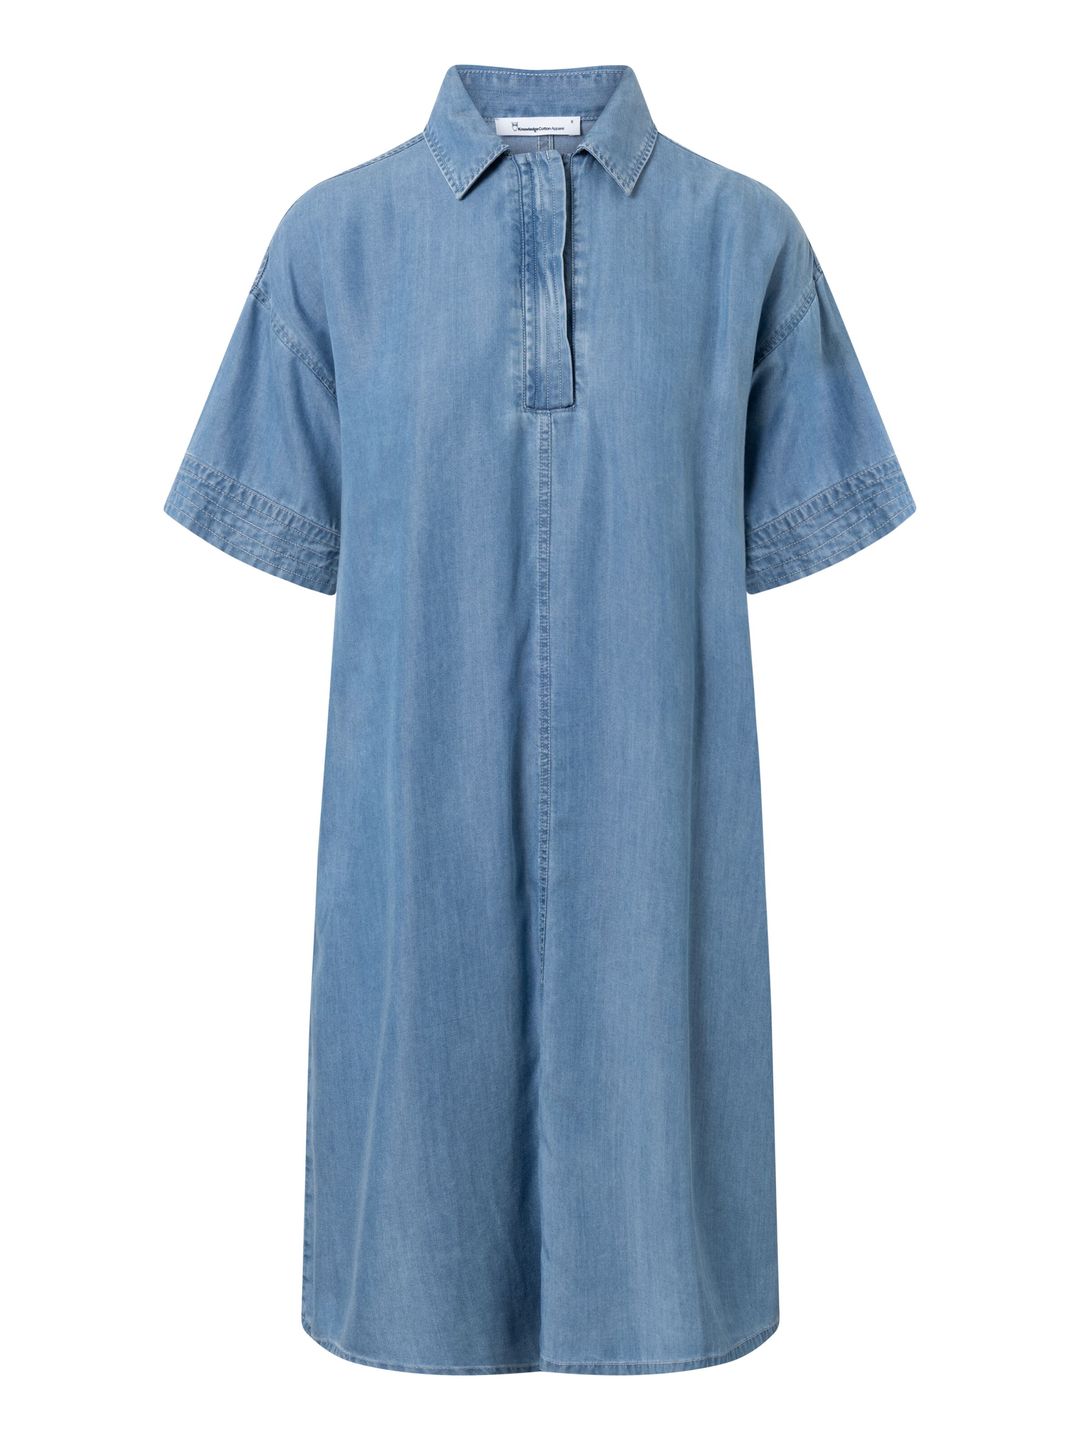 Kleid A-shape denim Vintage Indigo von KnowledgeCotton Apparel